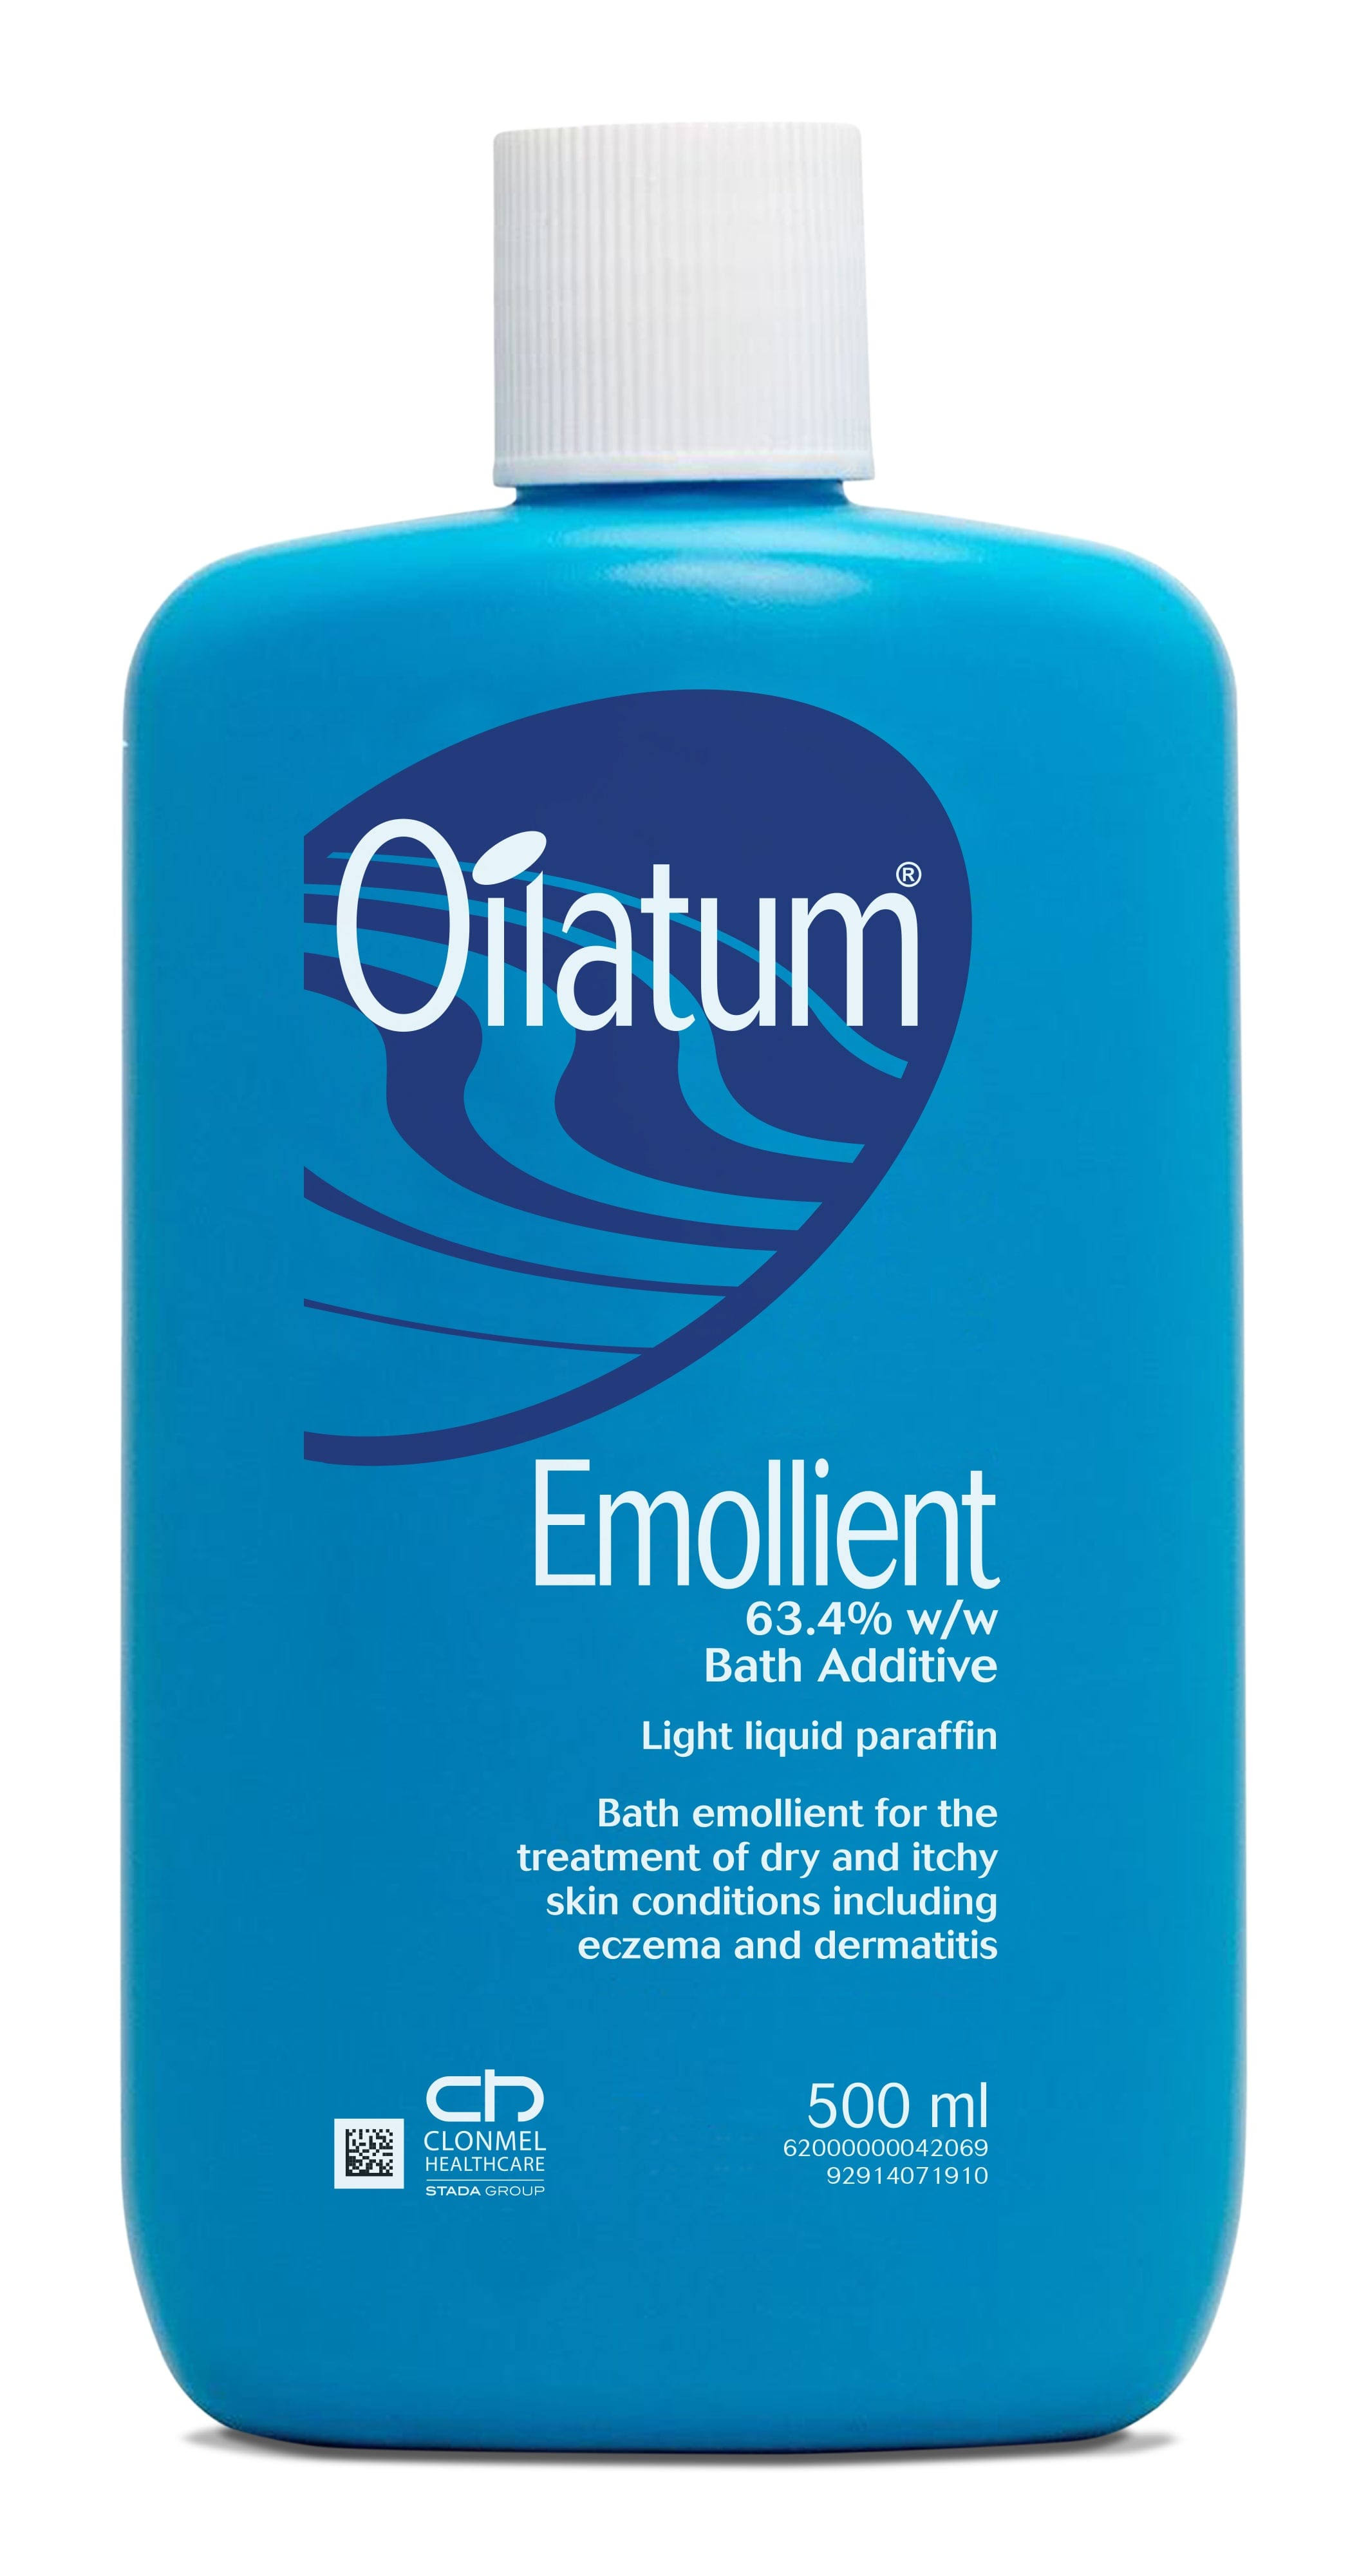 Oilatum Emollient Bath Additive 500ml